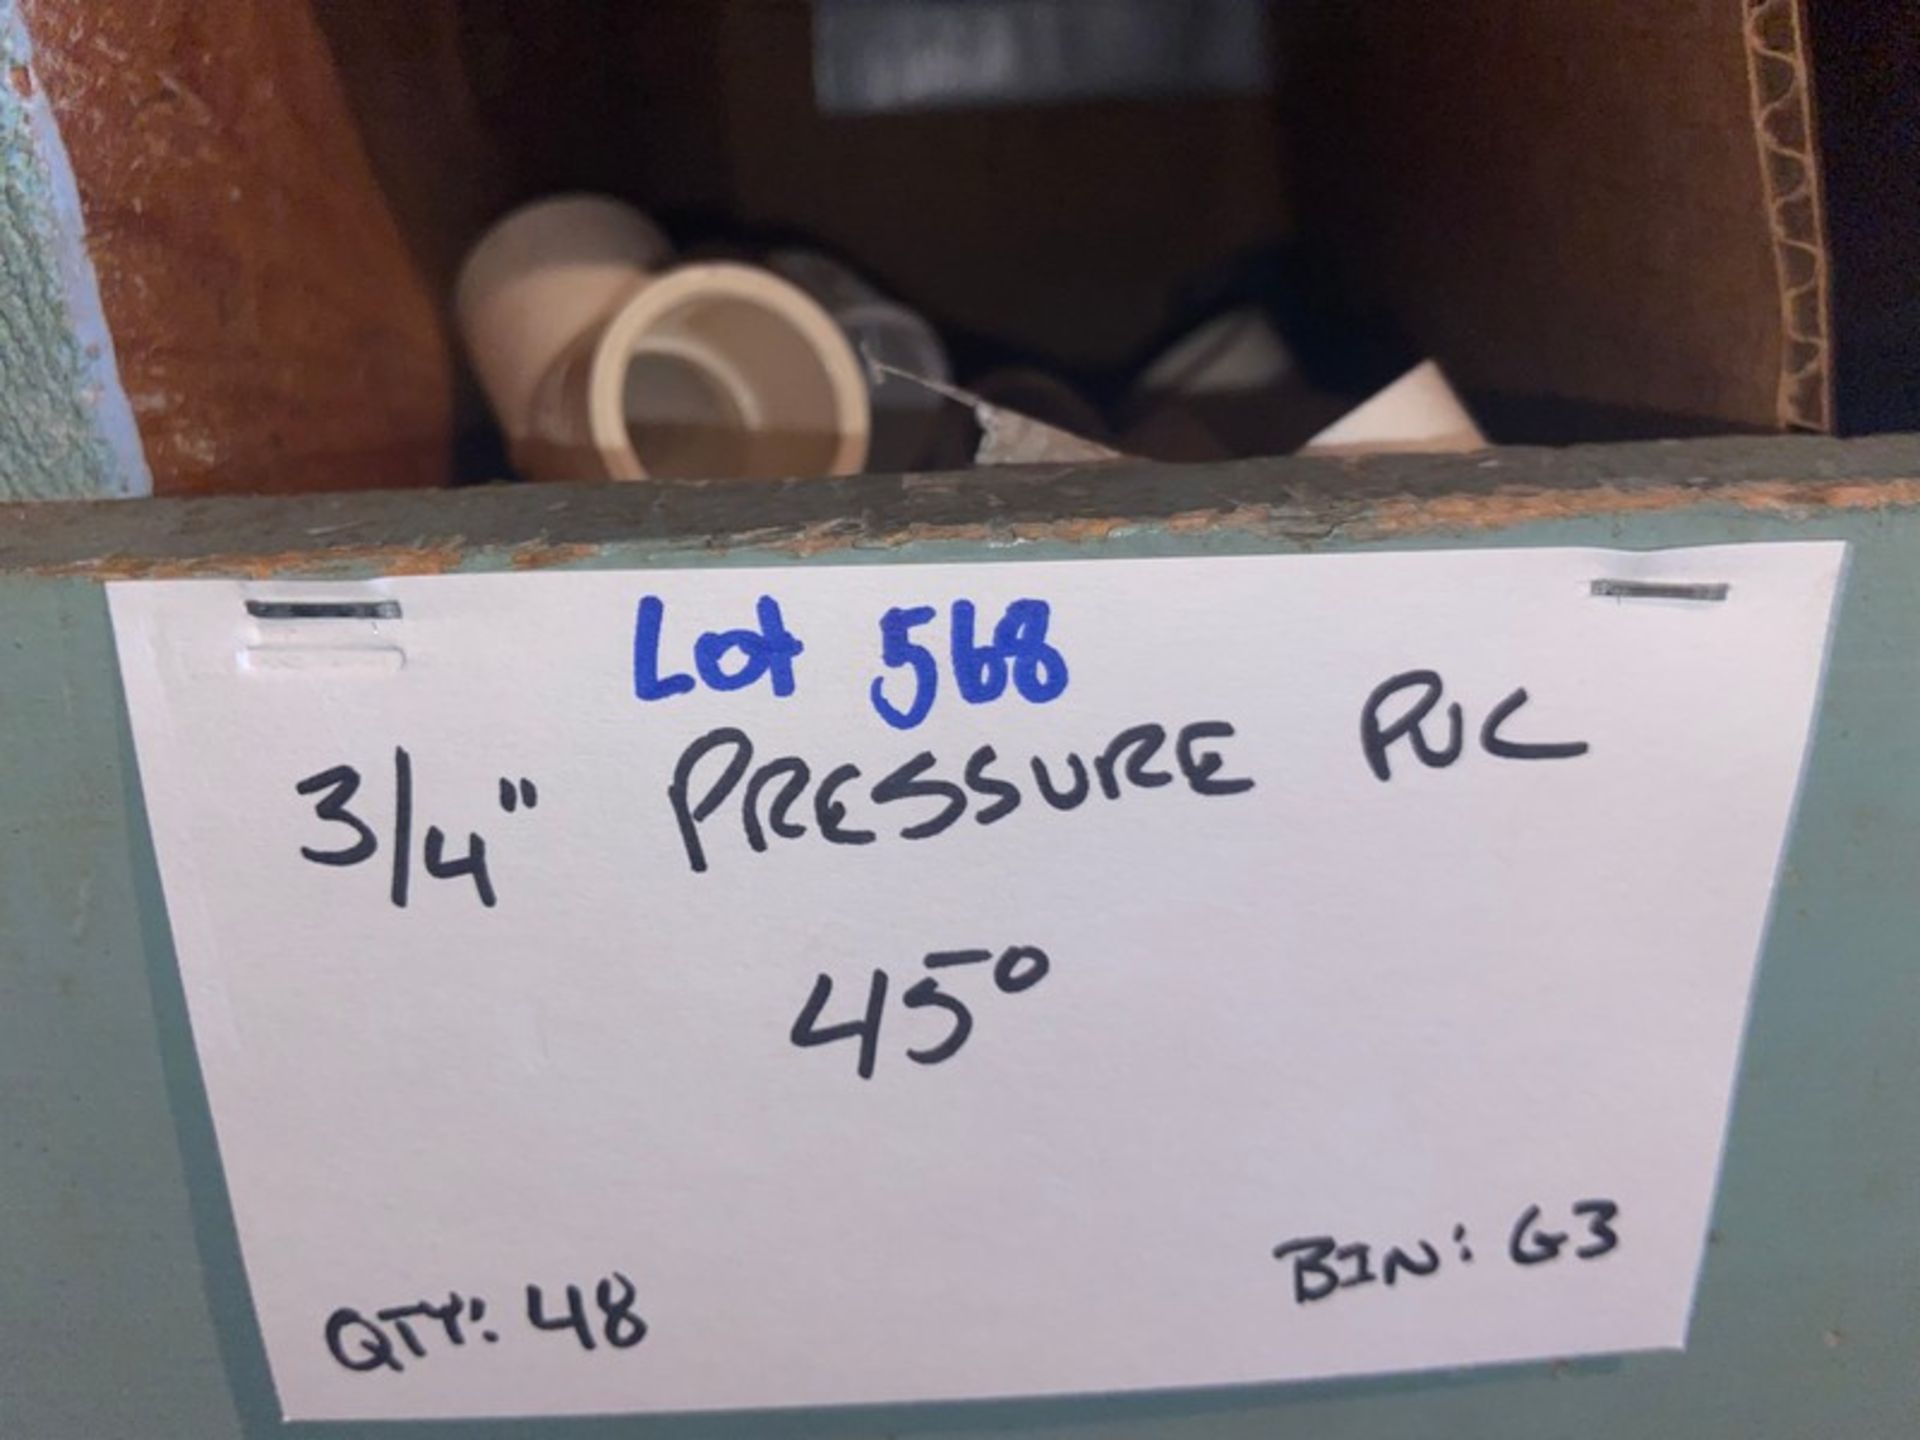 (15) 3/4” Pressure PVC Stree5 (Bin:G3), Includes (48) 3/4” Pressure PVC 45’ (Bin:G3) (LOCATED IN - Bild 5 aus 8